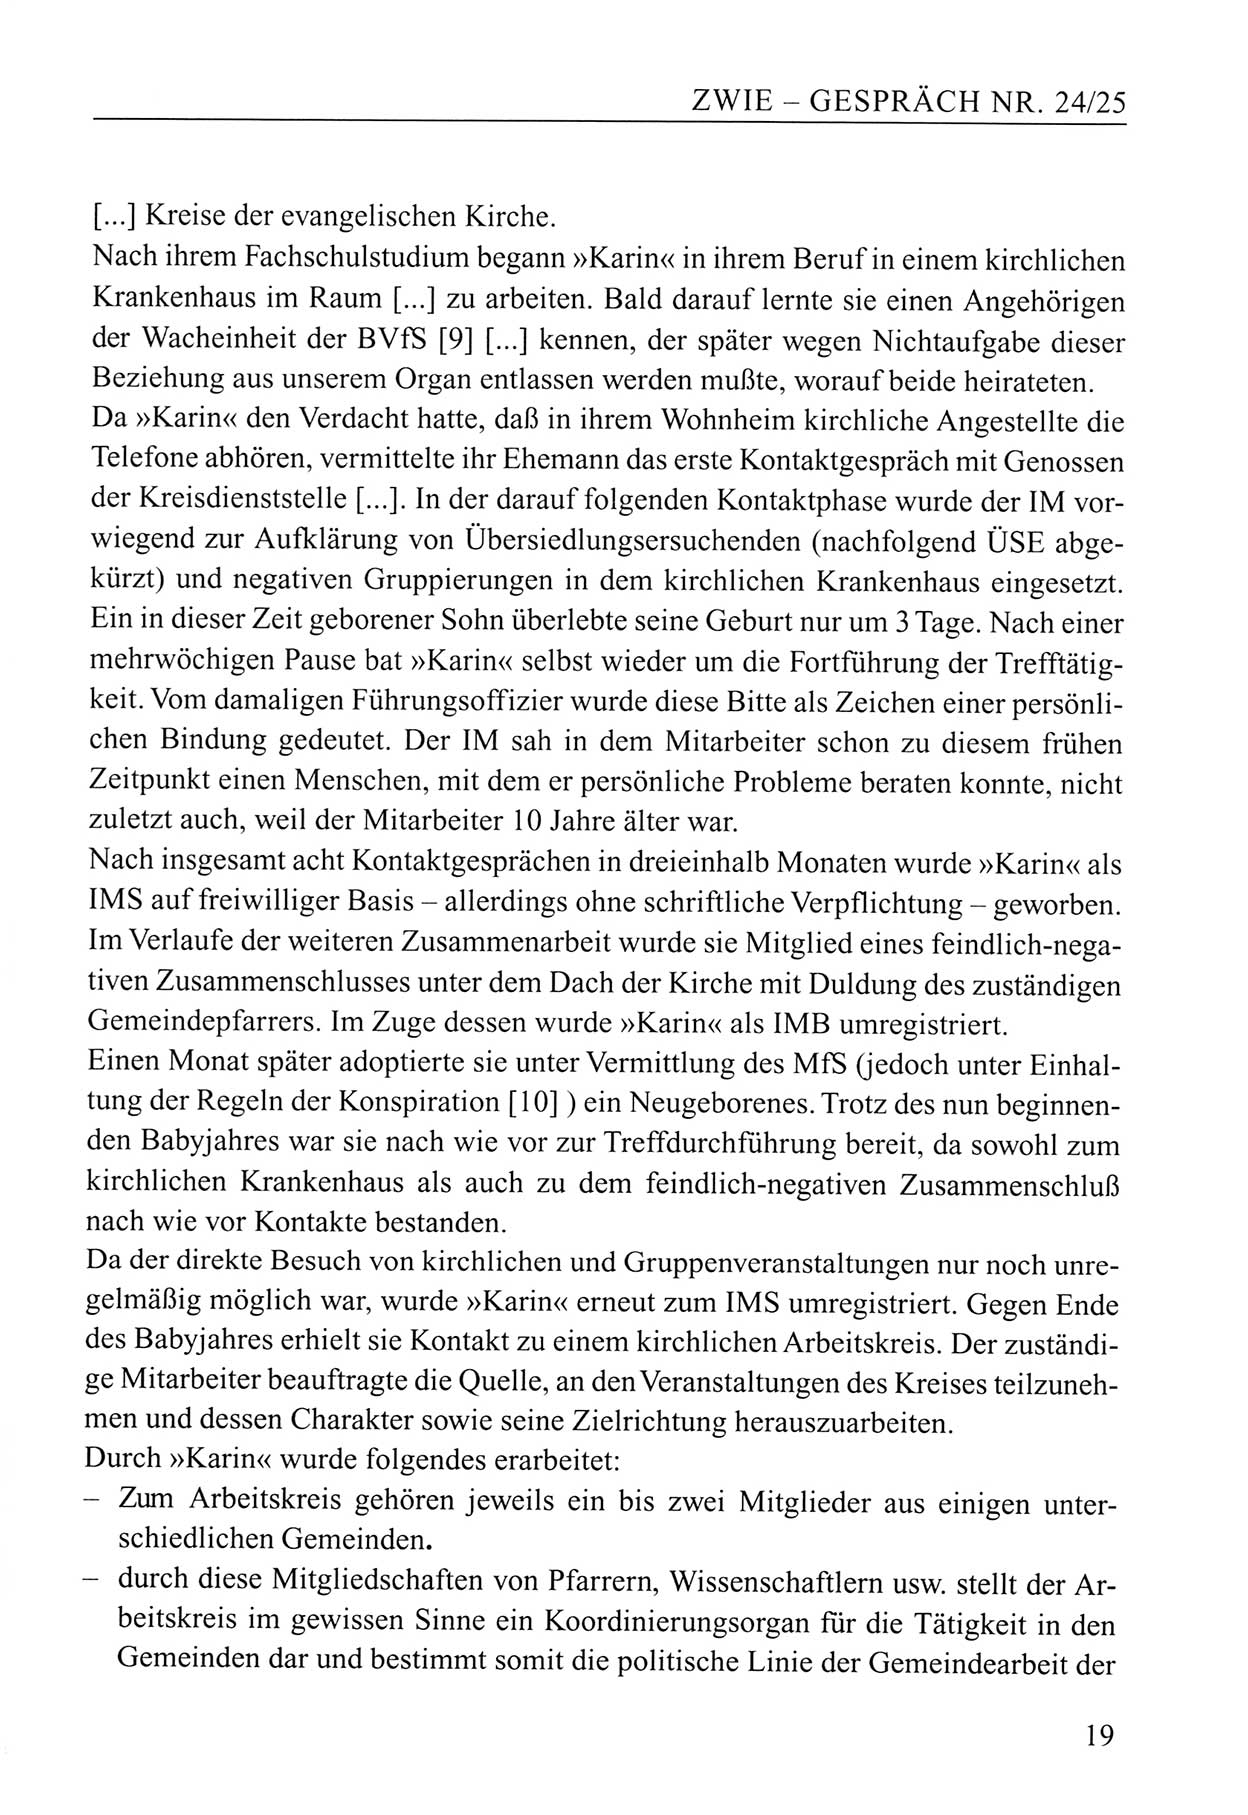 Zwie-Gespräch, Beiträge zum Umgang mit der Staatssicherheits-Vergangenheit [Deutsche Demokratische Republik (DDR)], Ausgabe Nr. 24/25, Berlin 1994, Seite 19 (Zwie-Gespr. Ausg. 24/25 1994, S. 19)